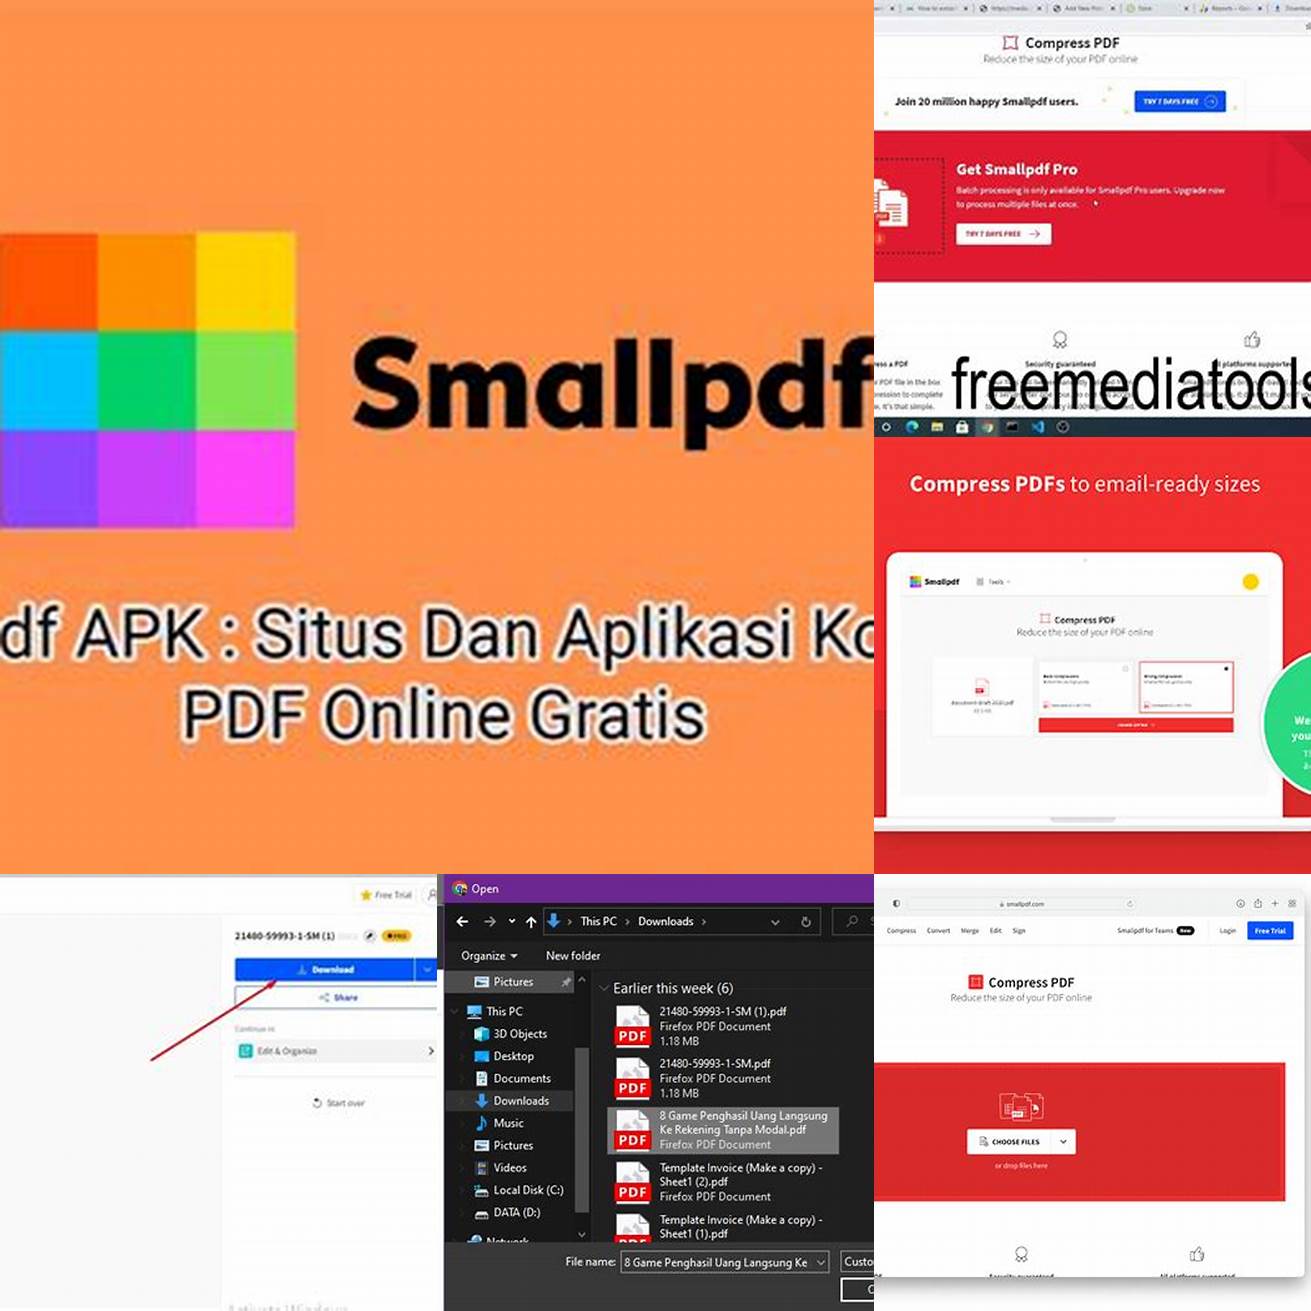 1 Buka situs web Smallpdf dan pilih menu Compress PDF di halaman utama